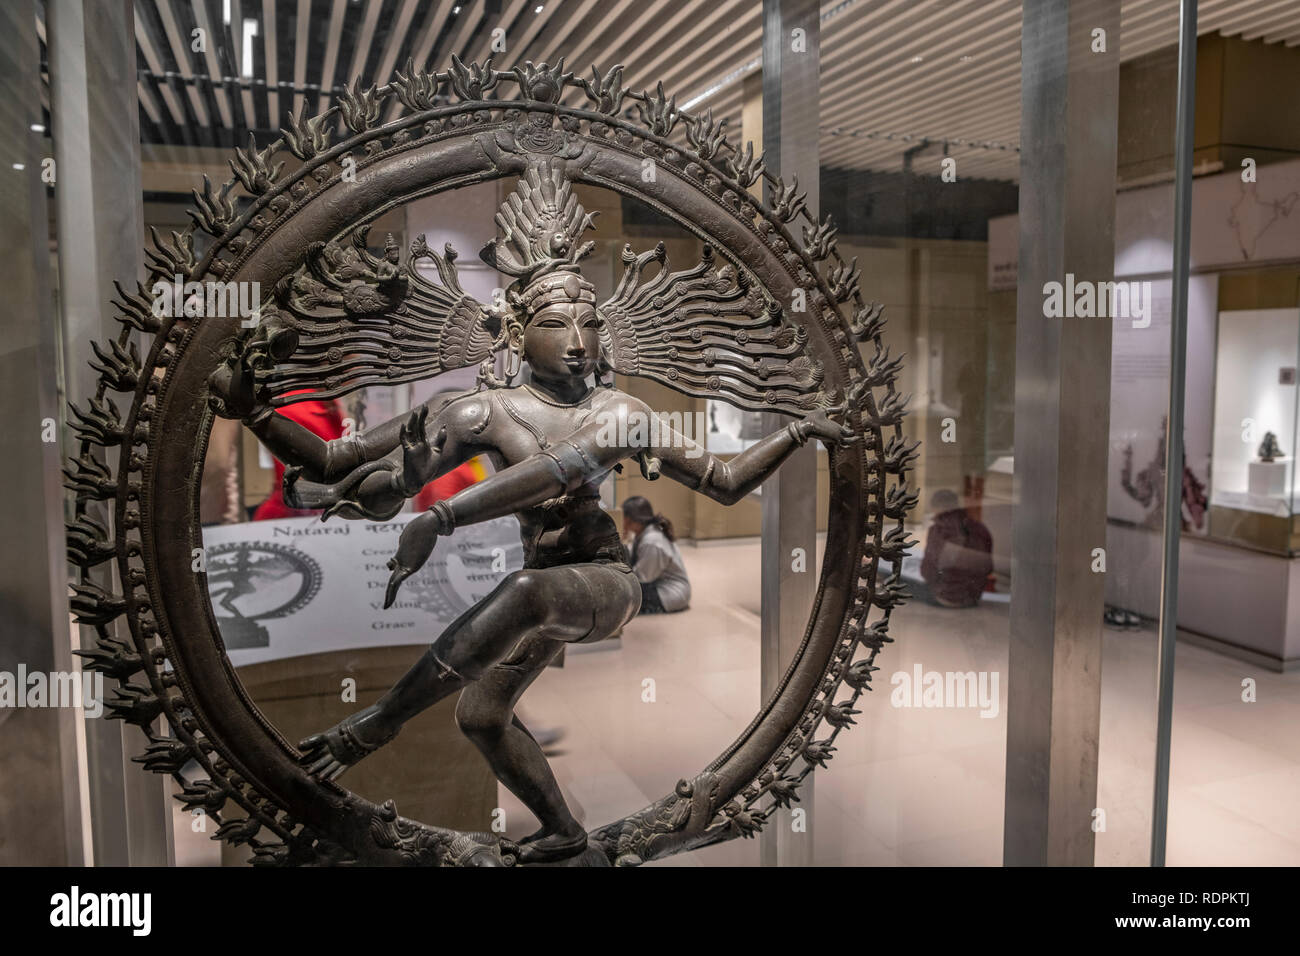 Nataraja. Le bronze. 10e siècle de Chola. Tamilnadu. Musée national de New Delhi Inde Banque D'Images